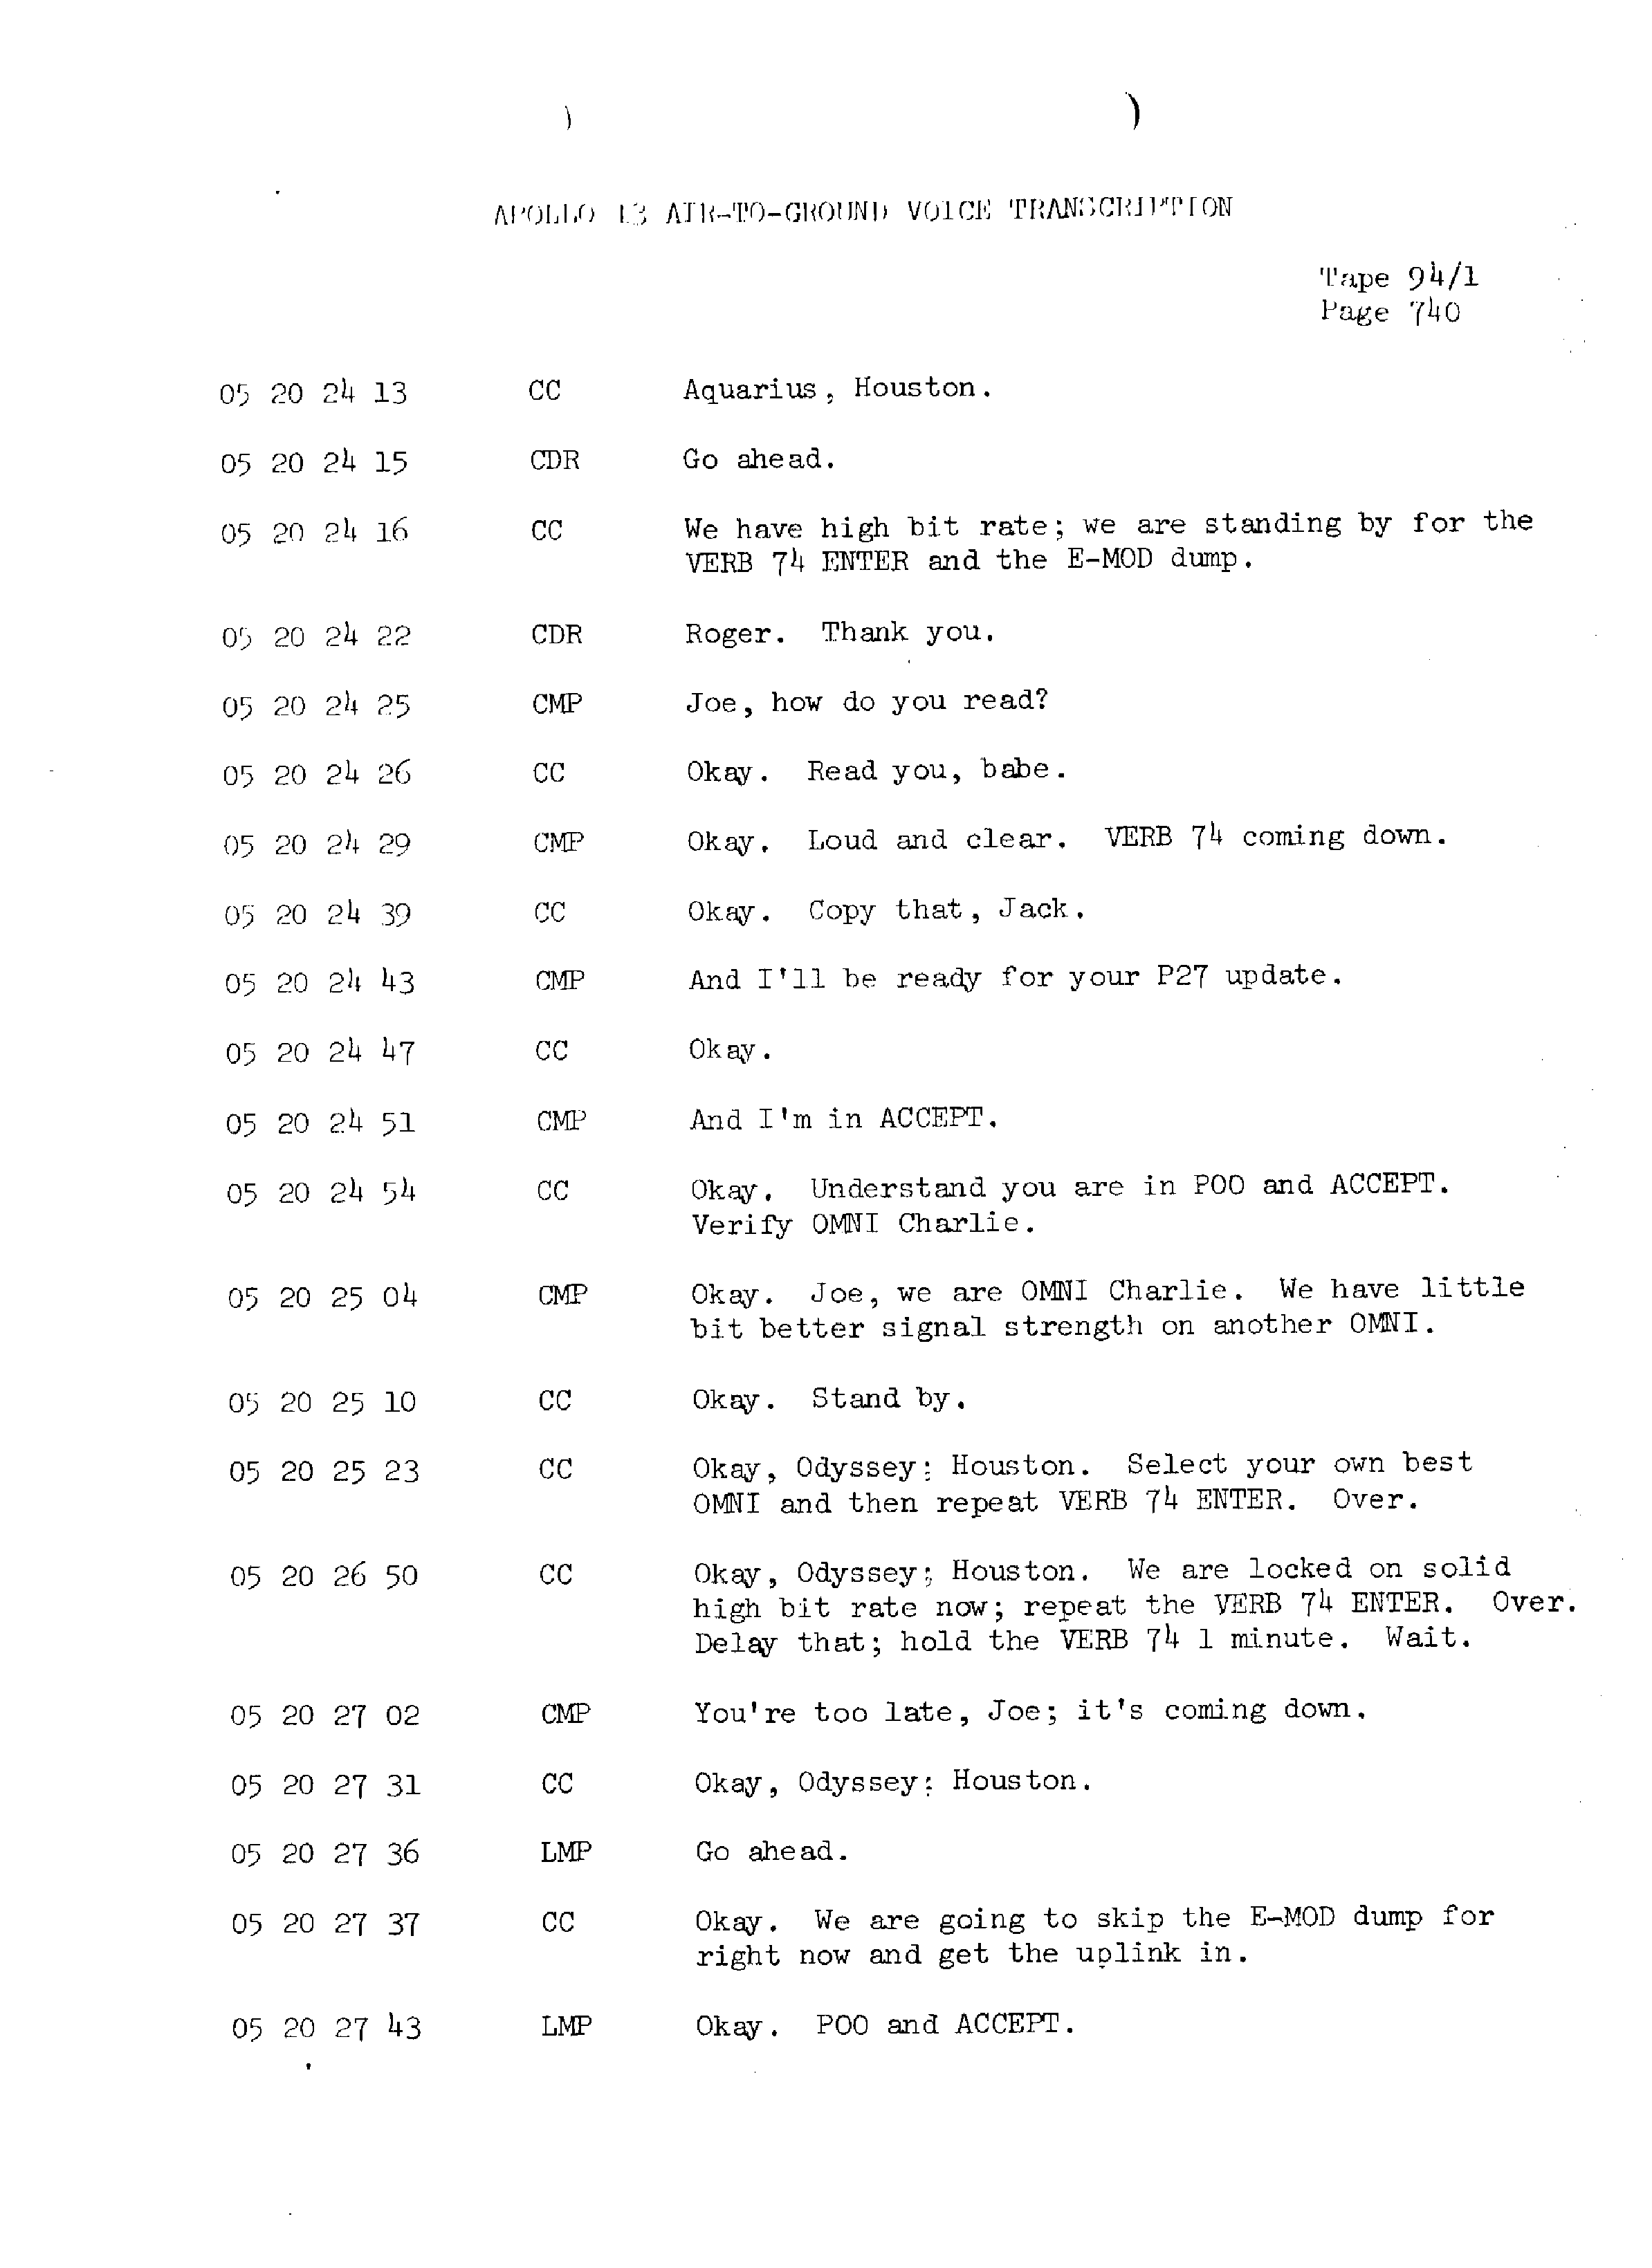 Page 747 of Apollo 13’s original transcript